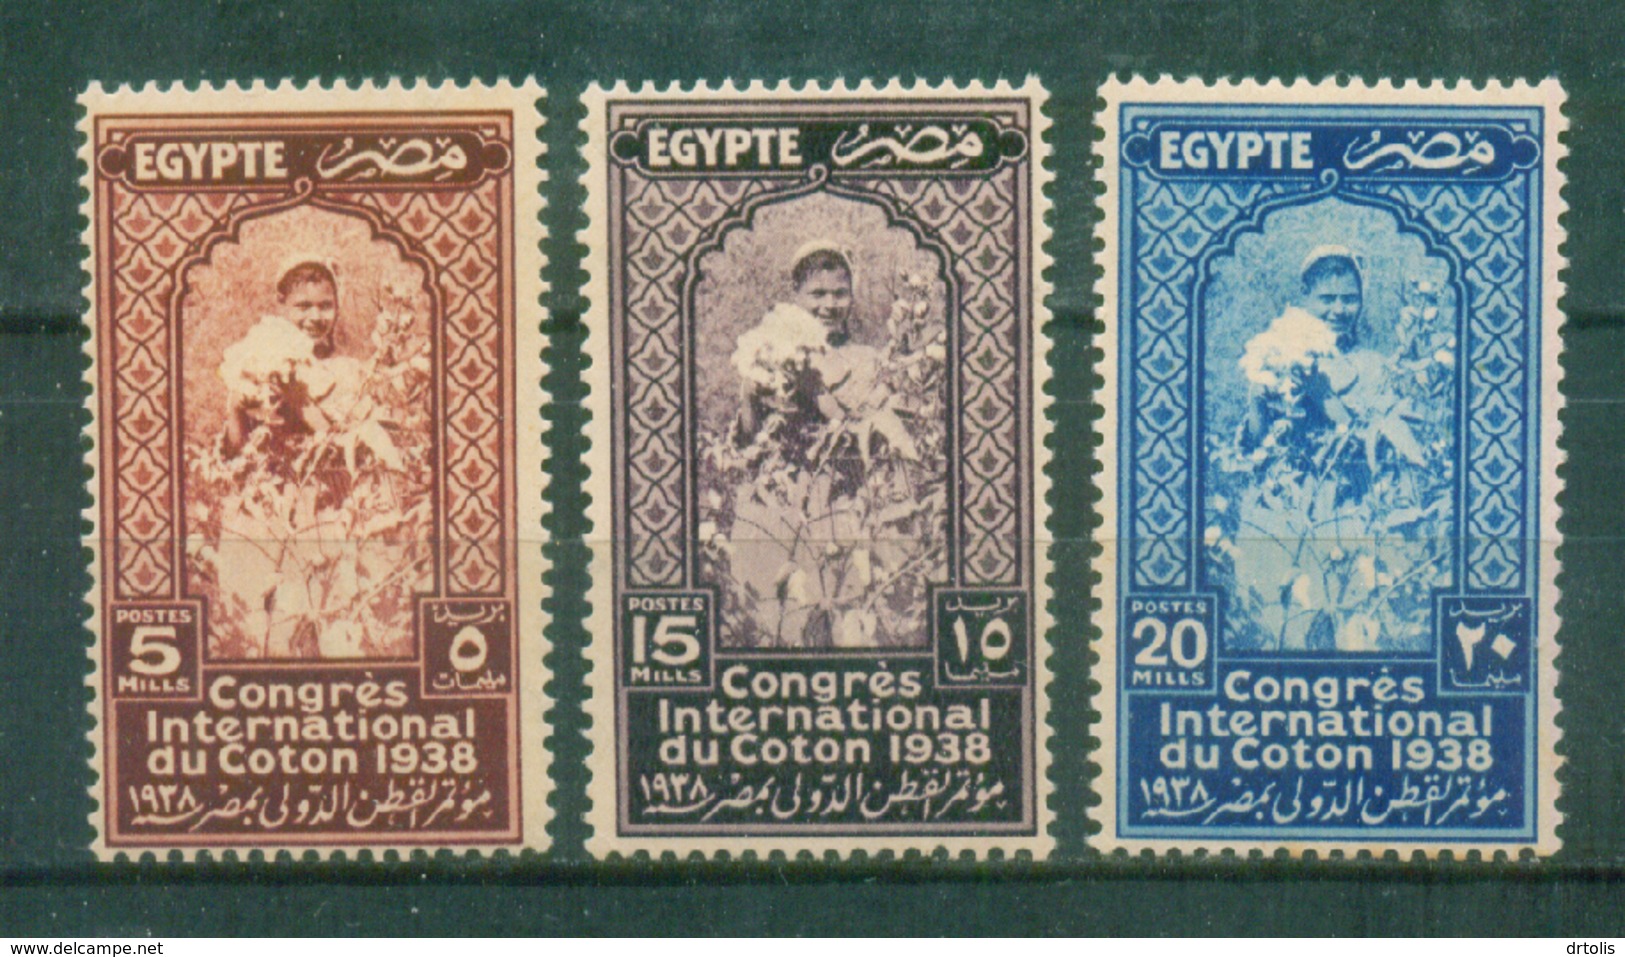 EGYPT / 1938 / INTERNATIONAL COTTON CONGRESS / MNH / VF - Ongebruikt